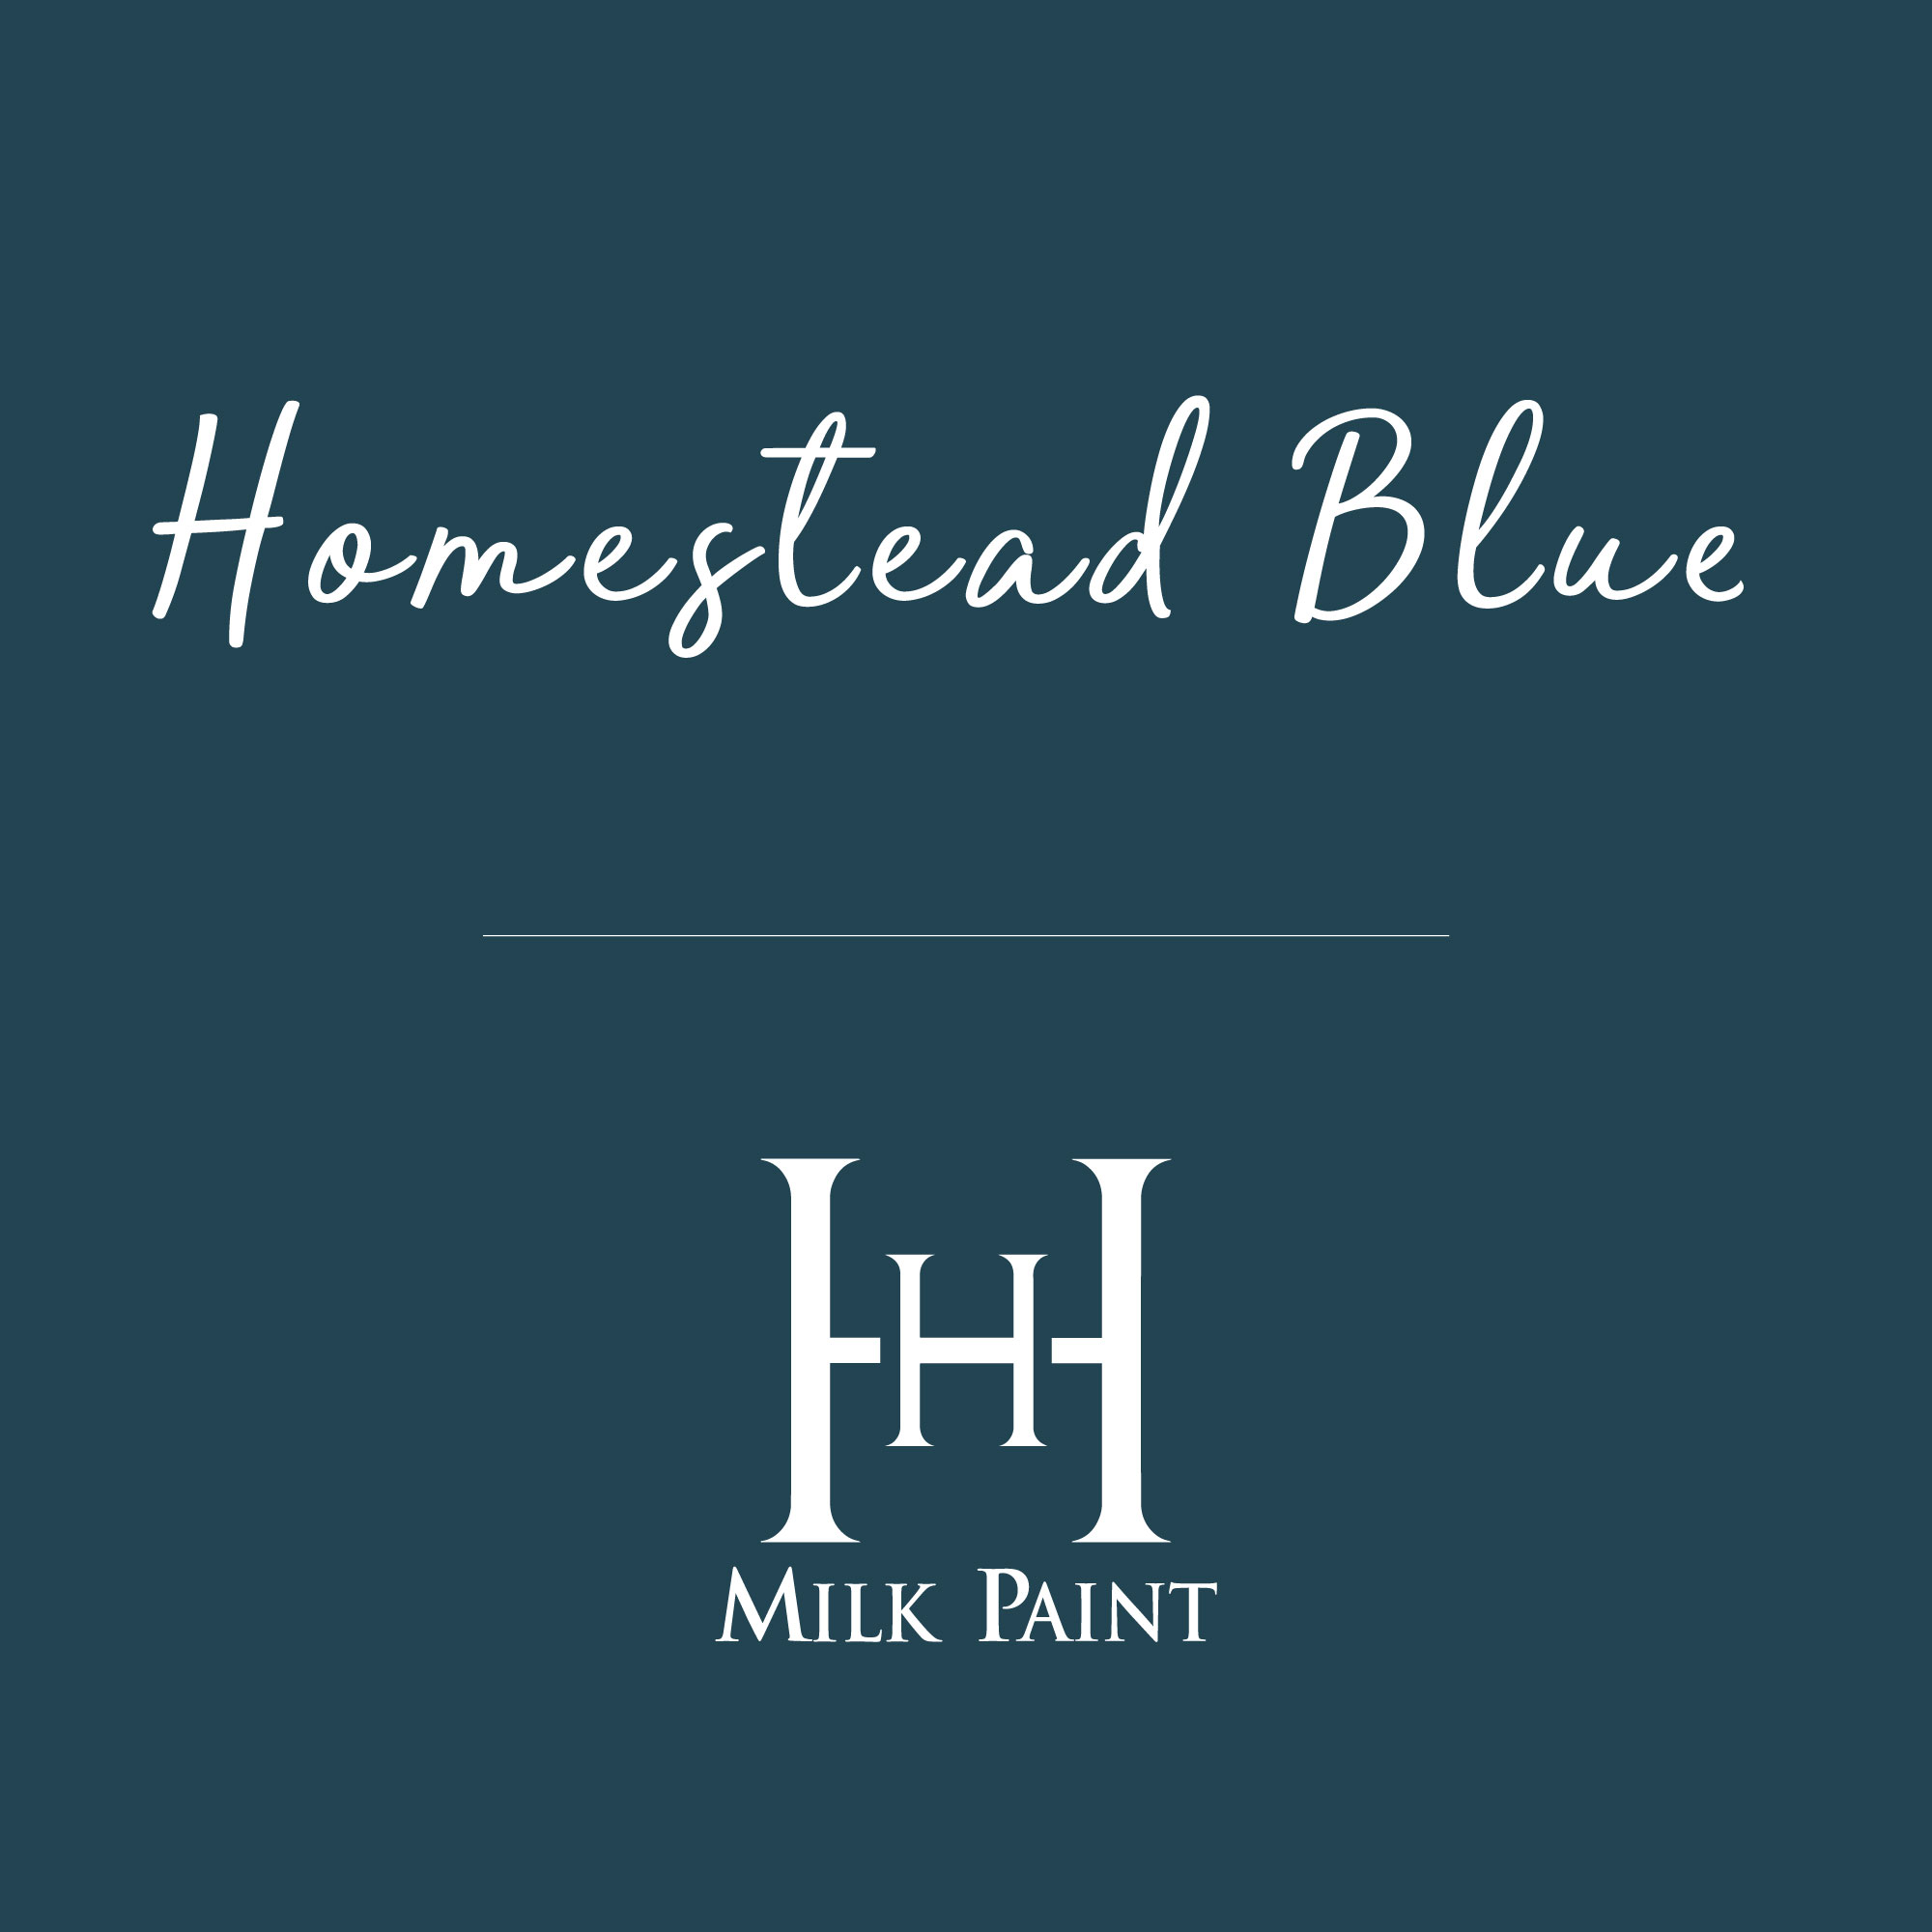 Homestead Blue Milk Paint